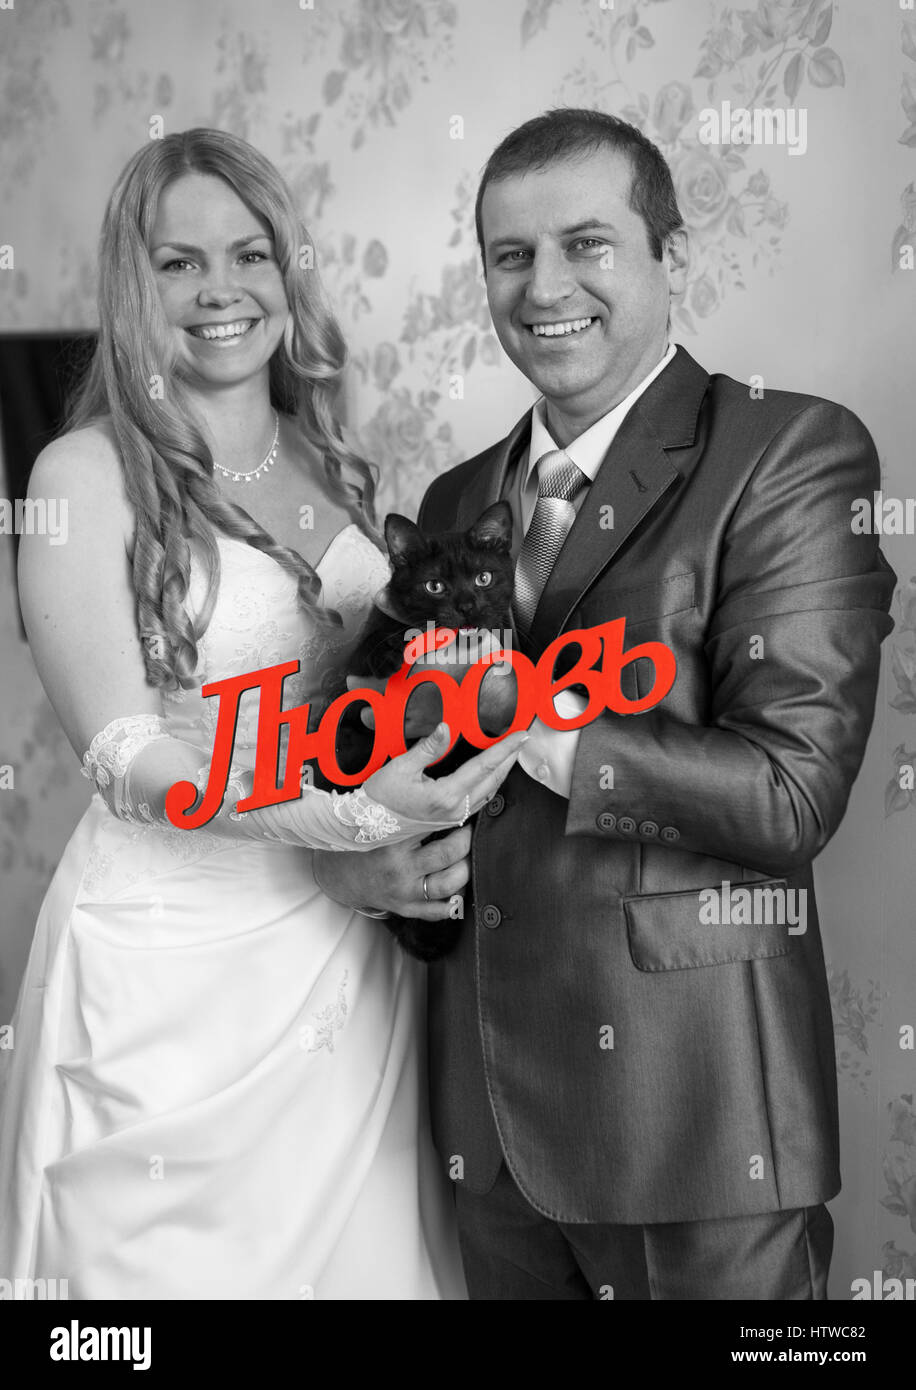 Felice e sorridente Caucasian giovane azienda red parola amore in russo in mano e gatto nero, immagine in scala di grigi Foto Stock